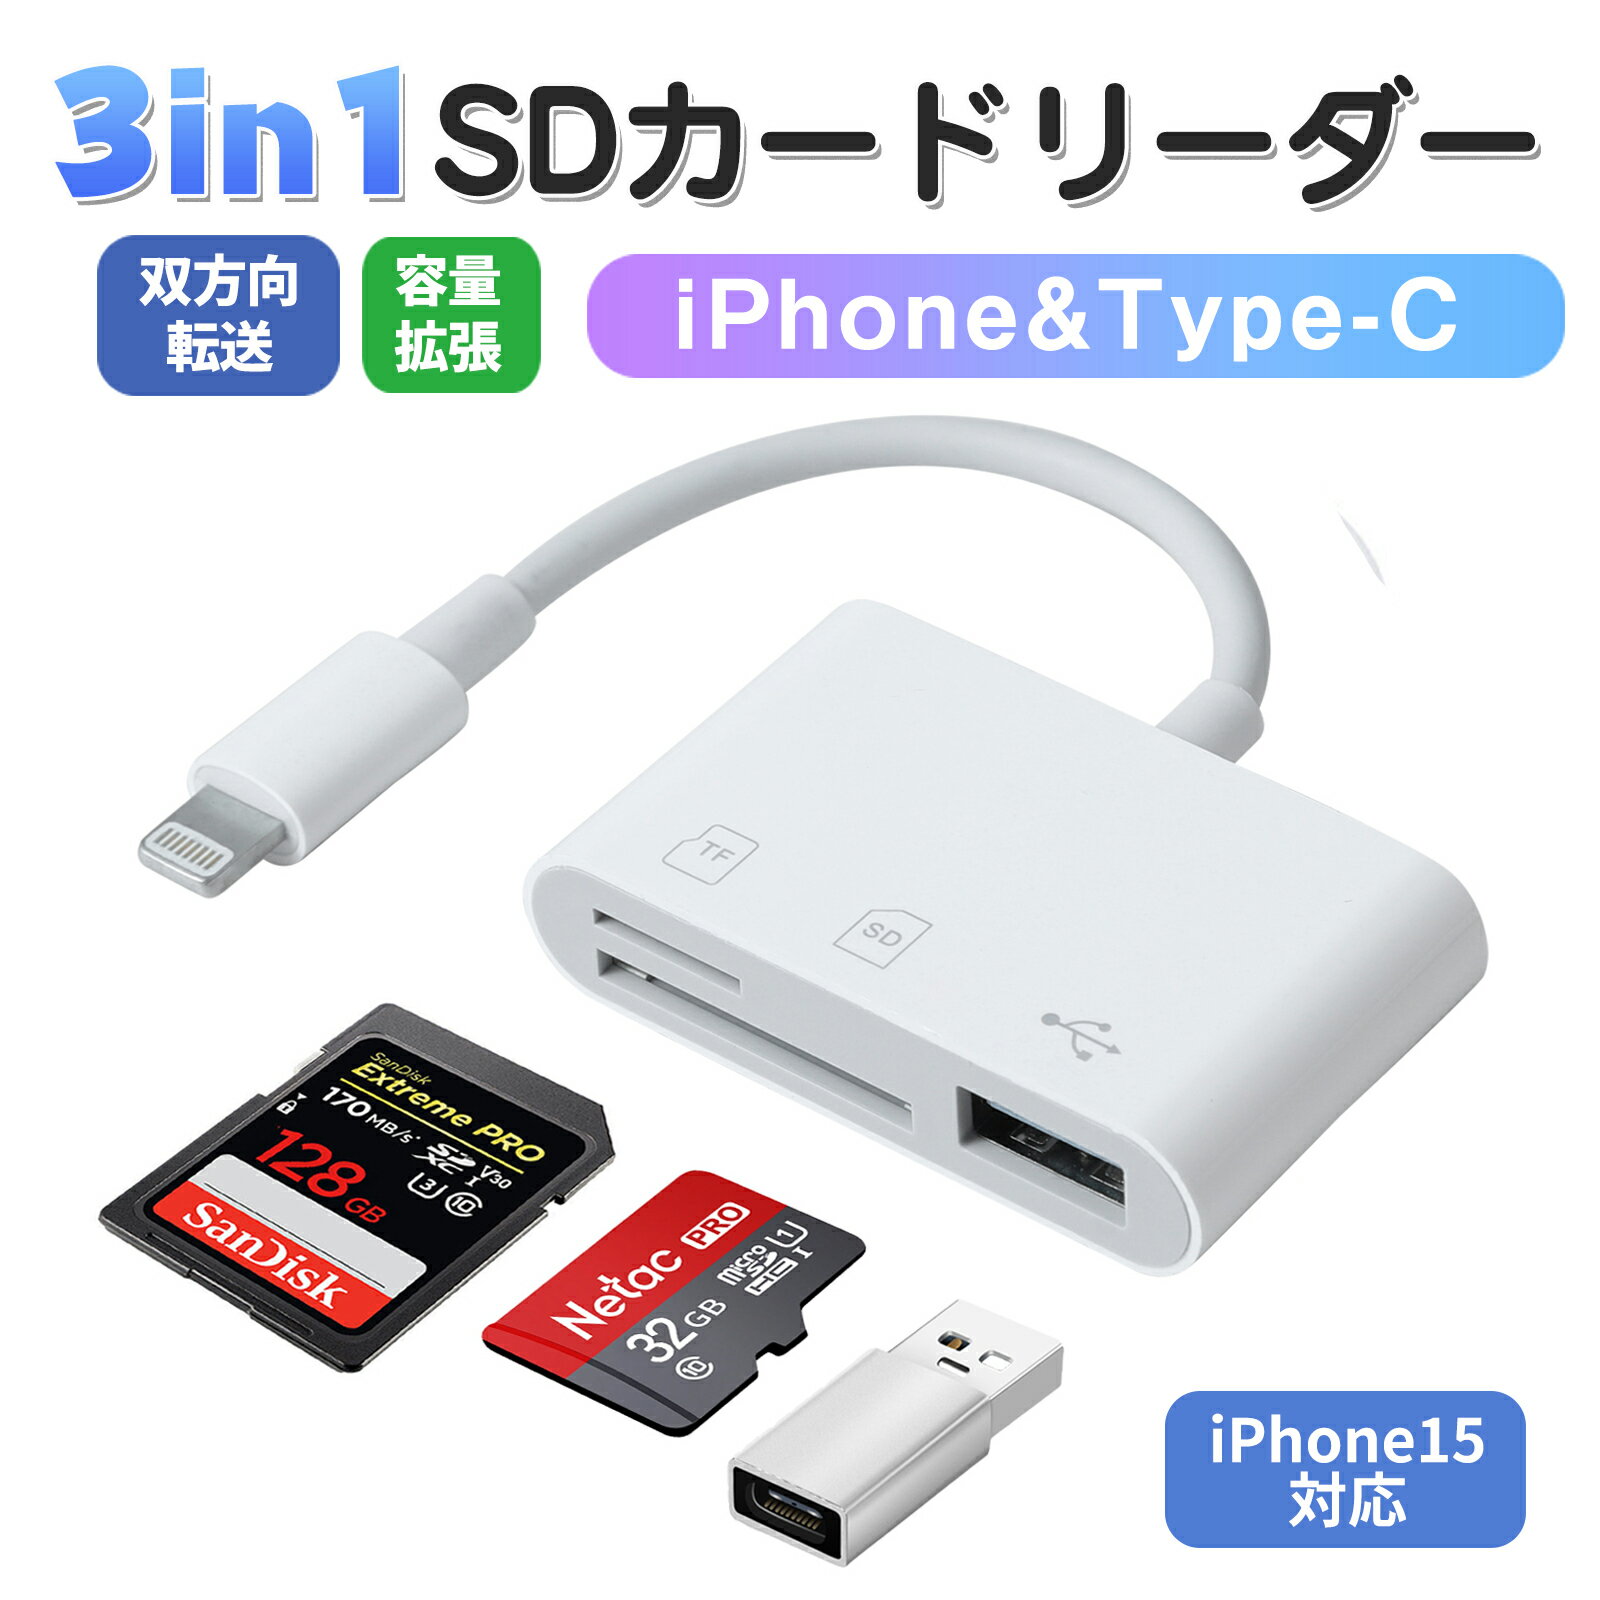 コムワークス SDカードデュプリケーター SD写楽 同時書込23枚 SRSD-23D 取り寄せ商品